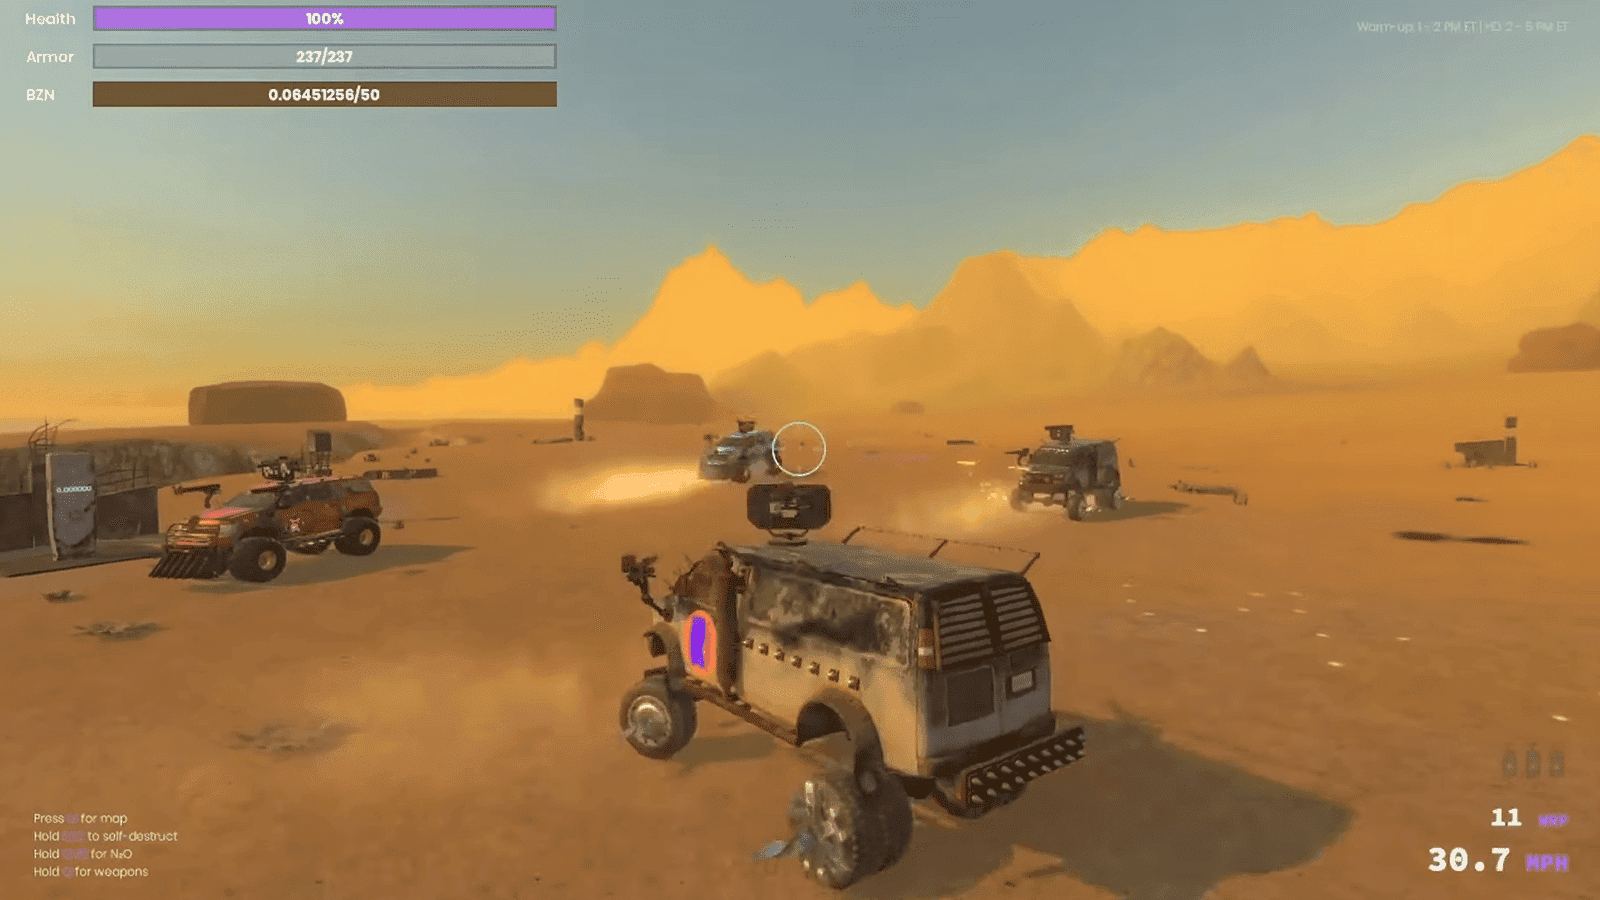 Cartified is de game-ontwikkelaar van de game War Riders, een game aan de WEB3-kant van gaming die een enorme post-apocalyptische wereld laat zien